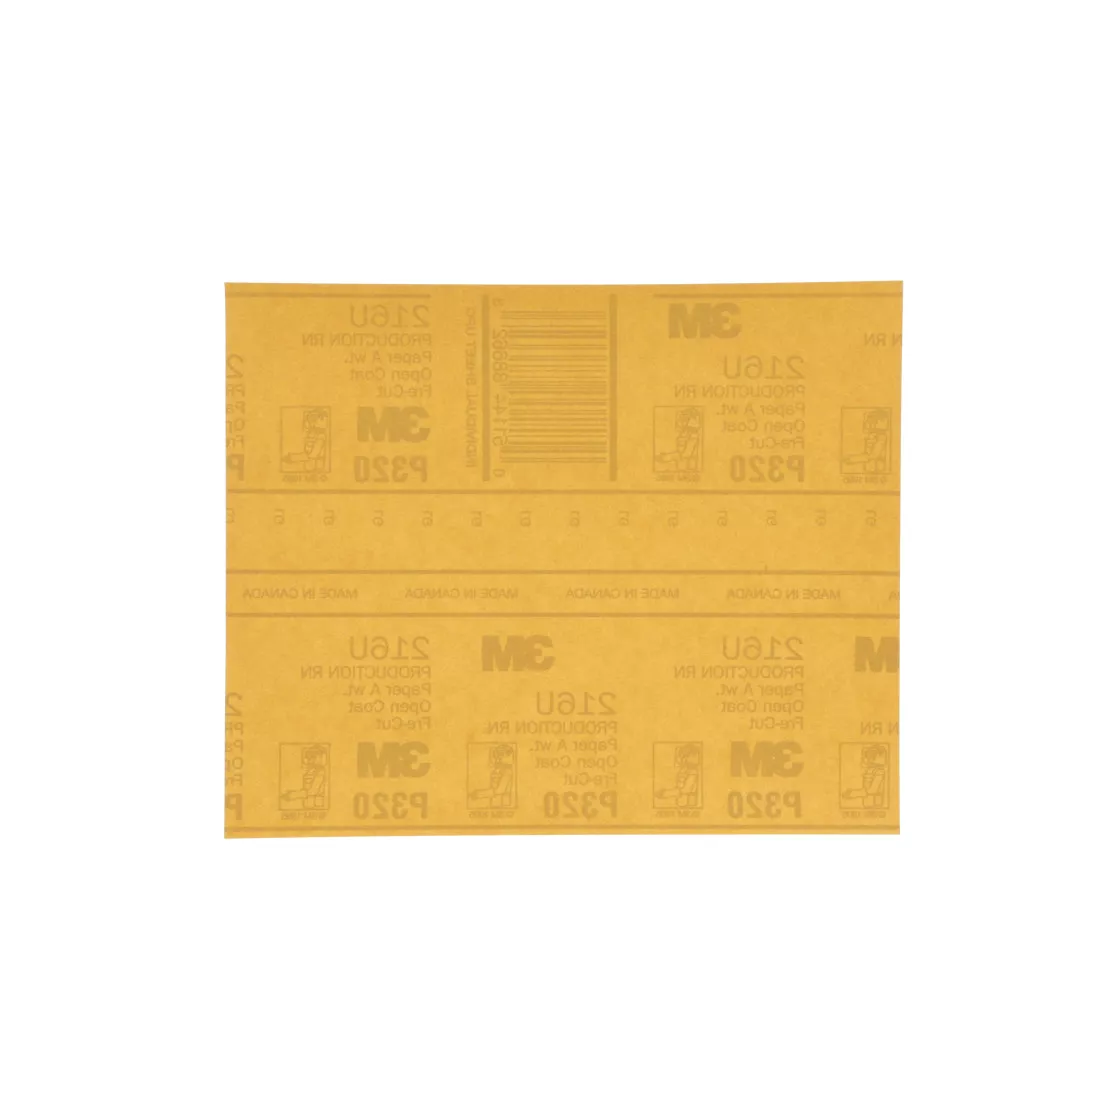 3M™ Gold Abrasive Sheet, 02541, P320 grade, 9 in x 11 in, 50 sheets per
pack, 5 packs per case